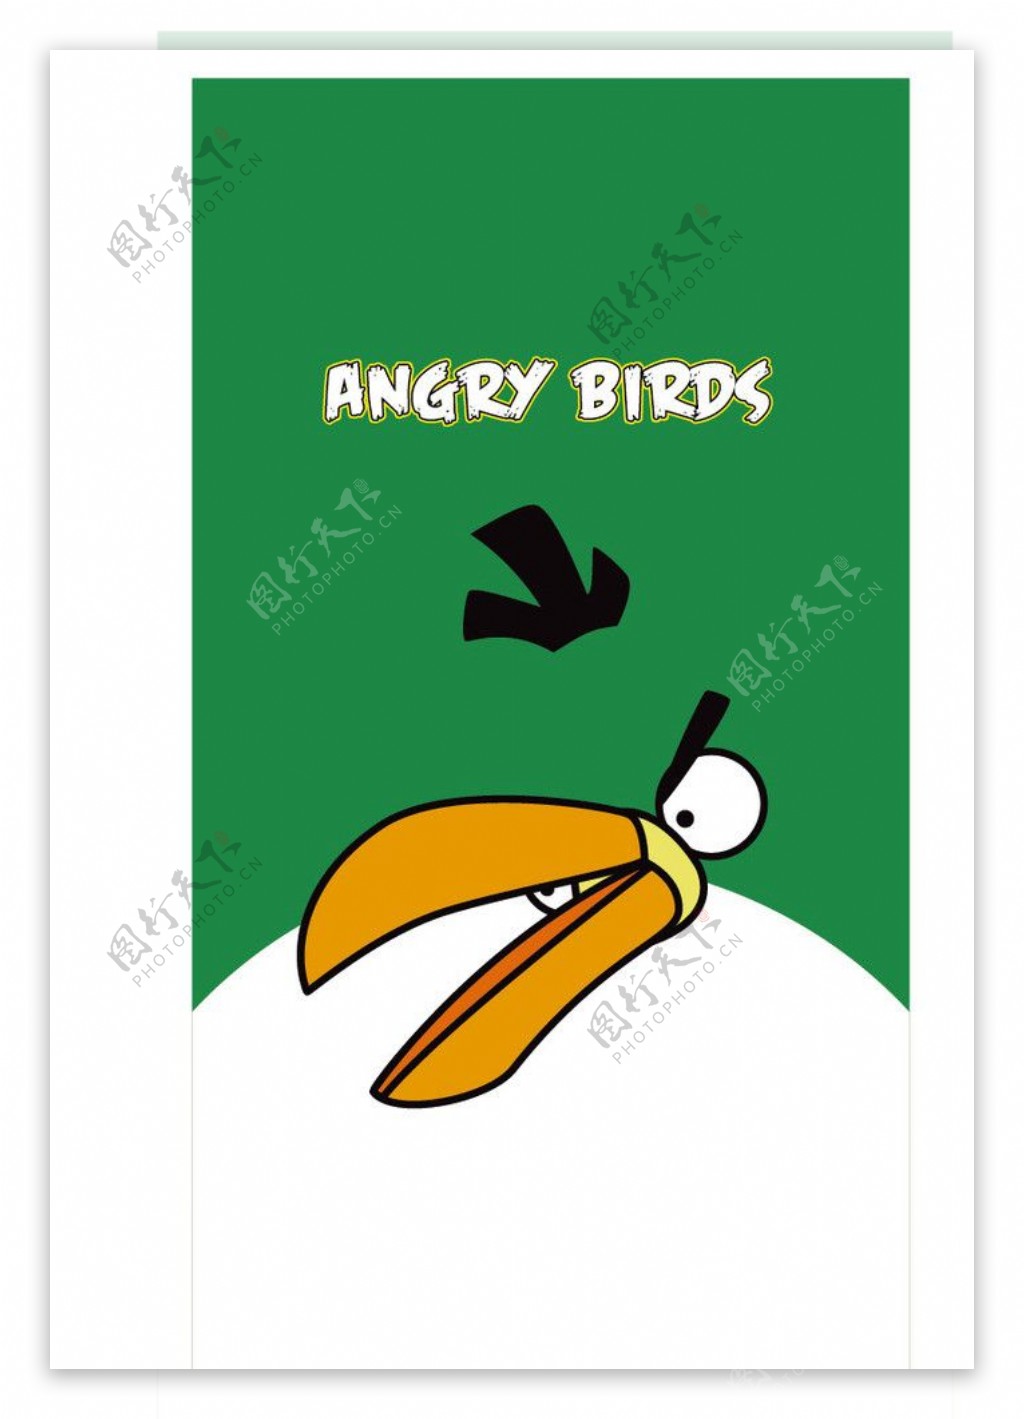 愤怒的小鸟图片